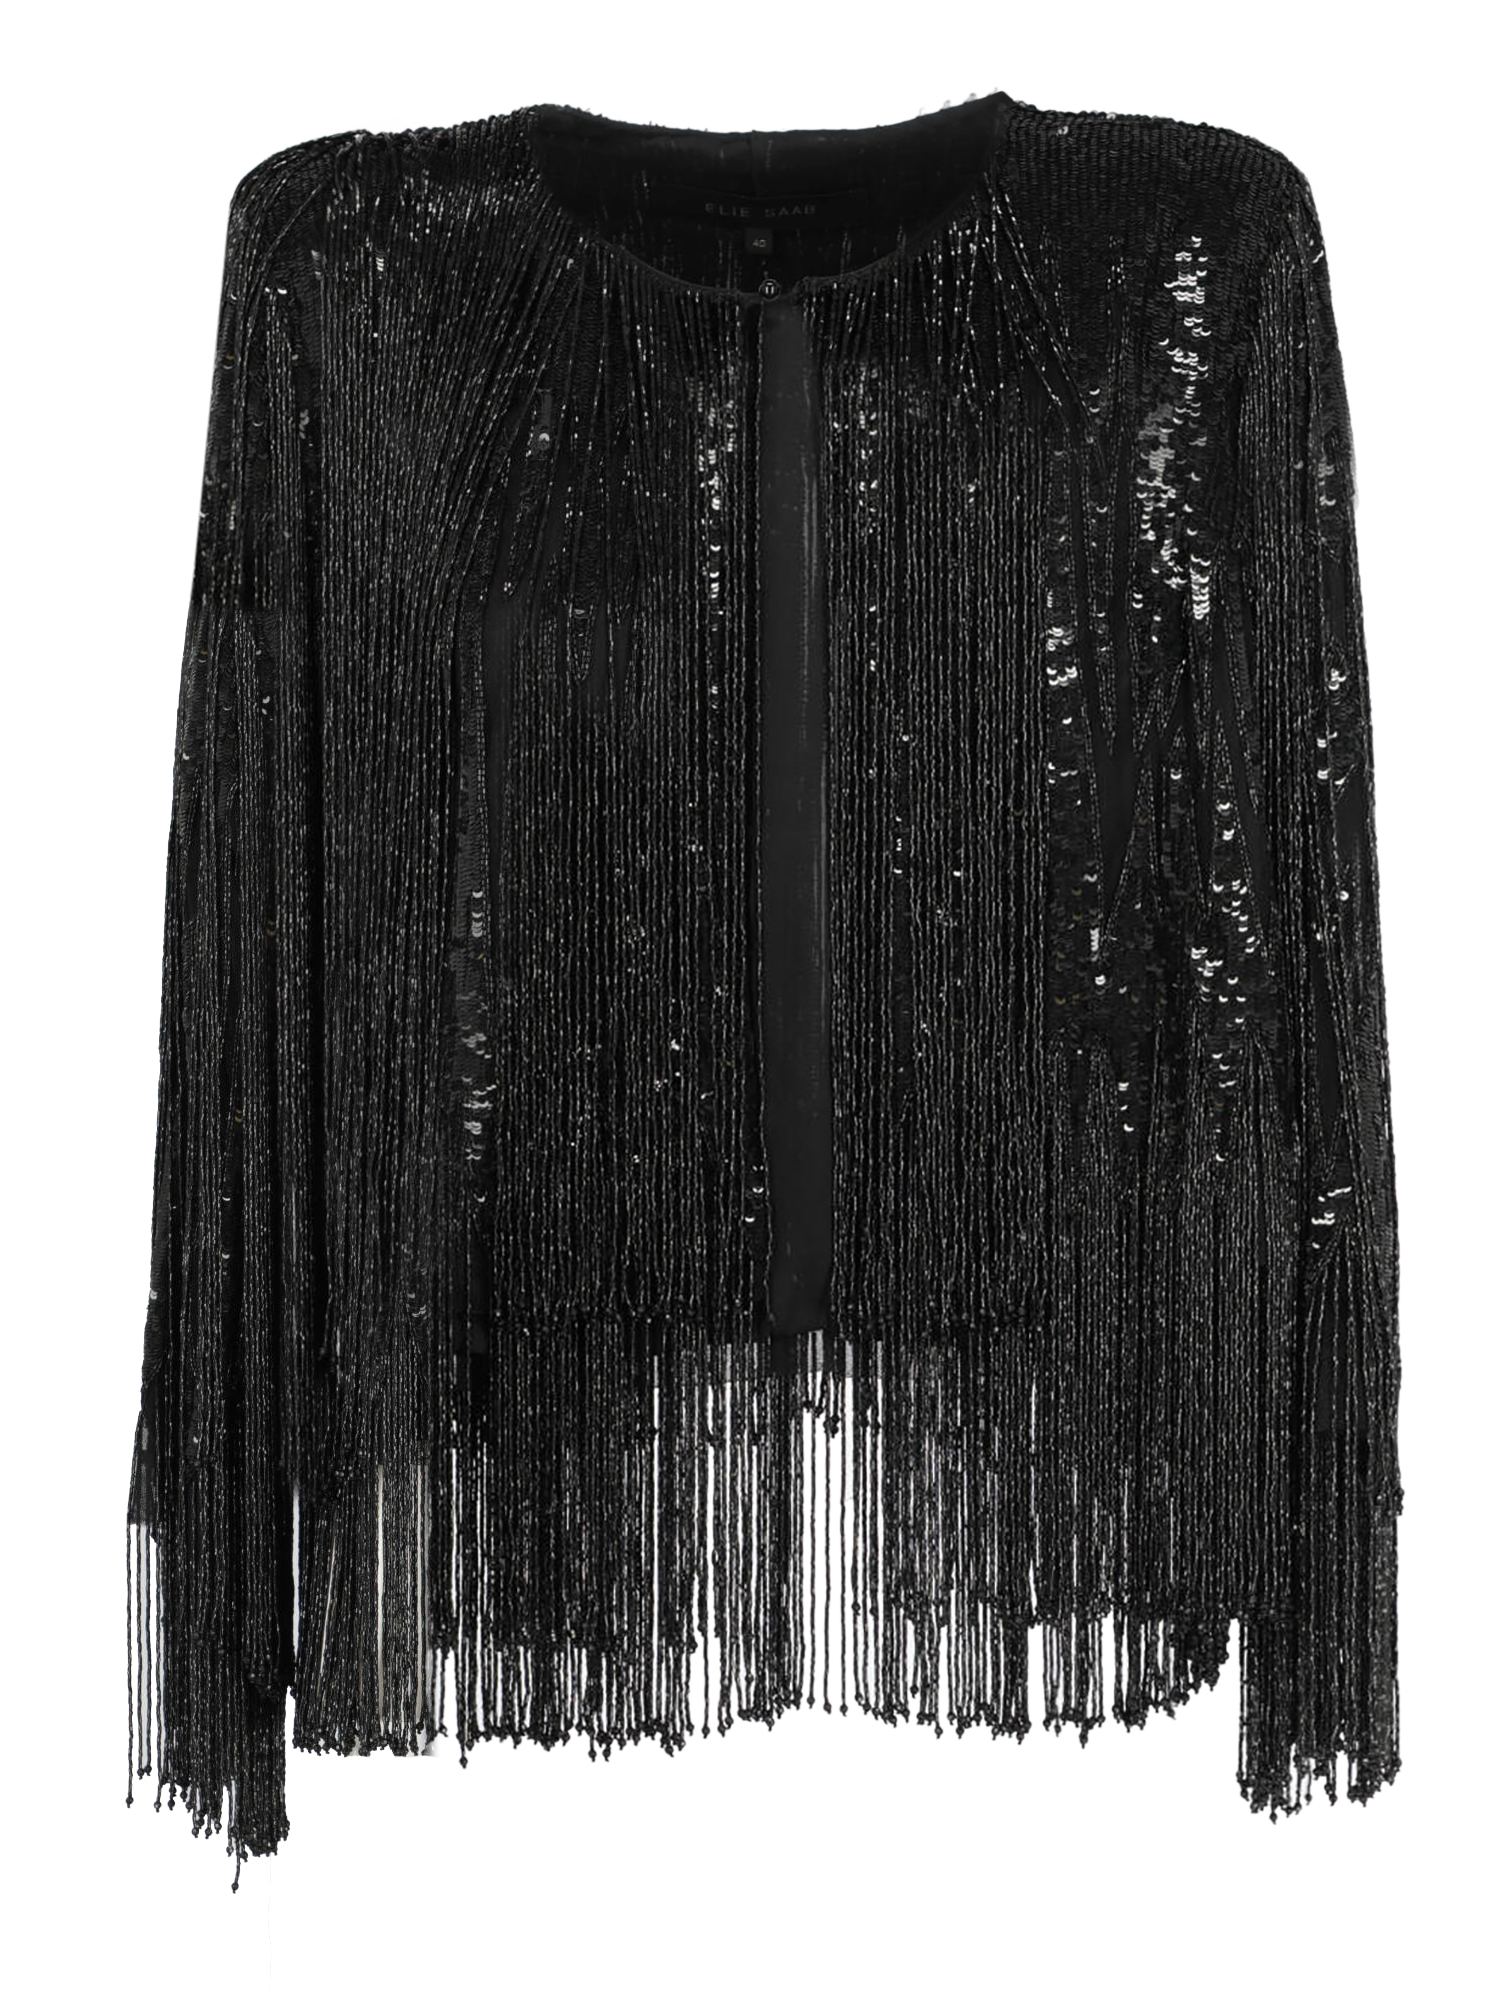 Vestes Pour Femme - Elie Saab - En Synthetic Fibers Black - Taille:  -